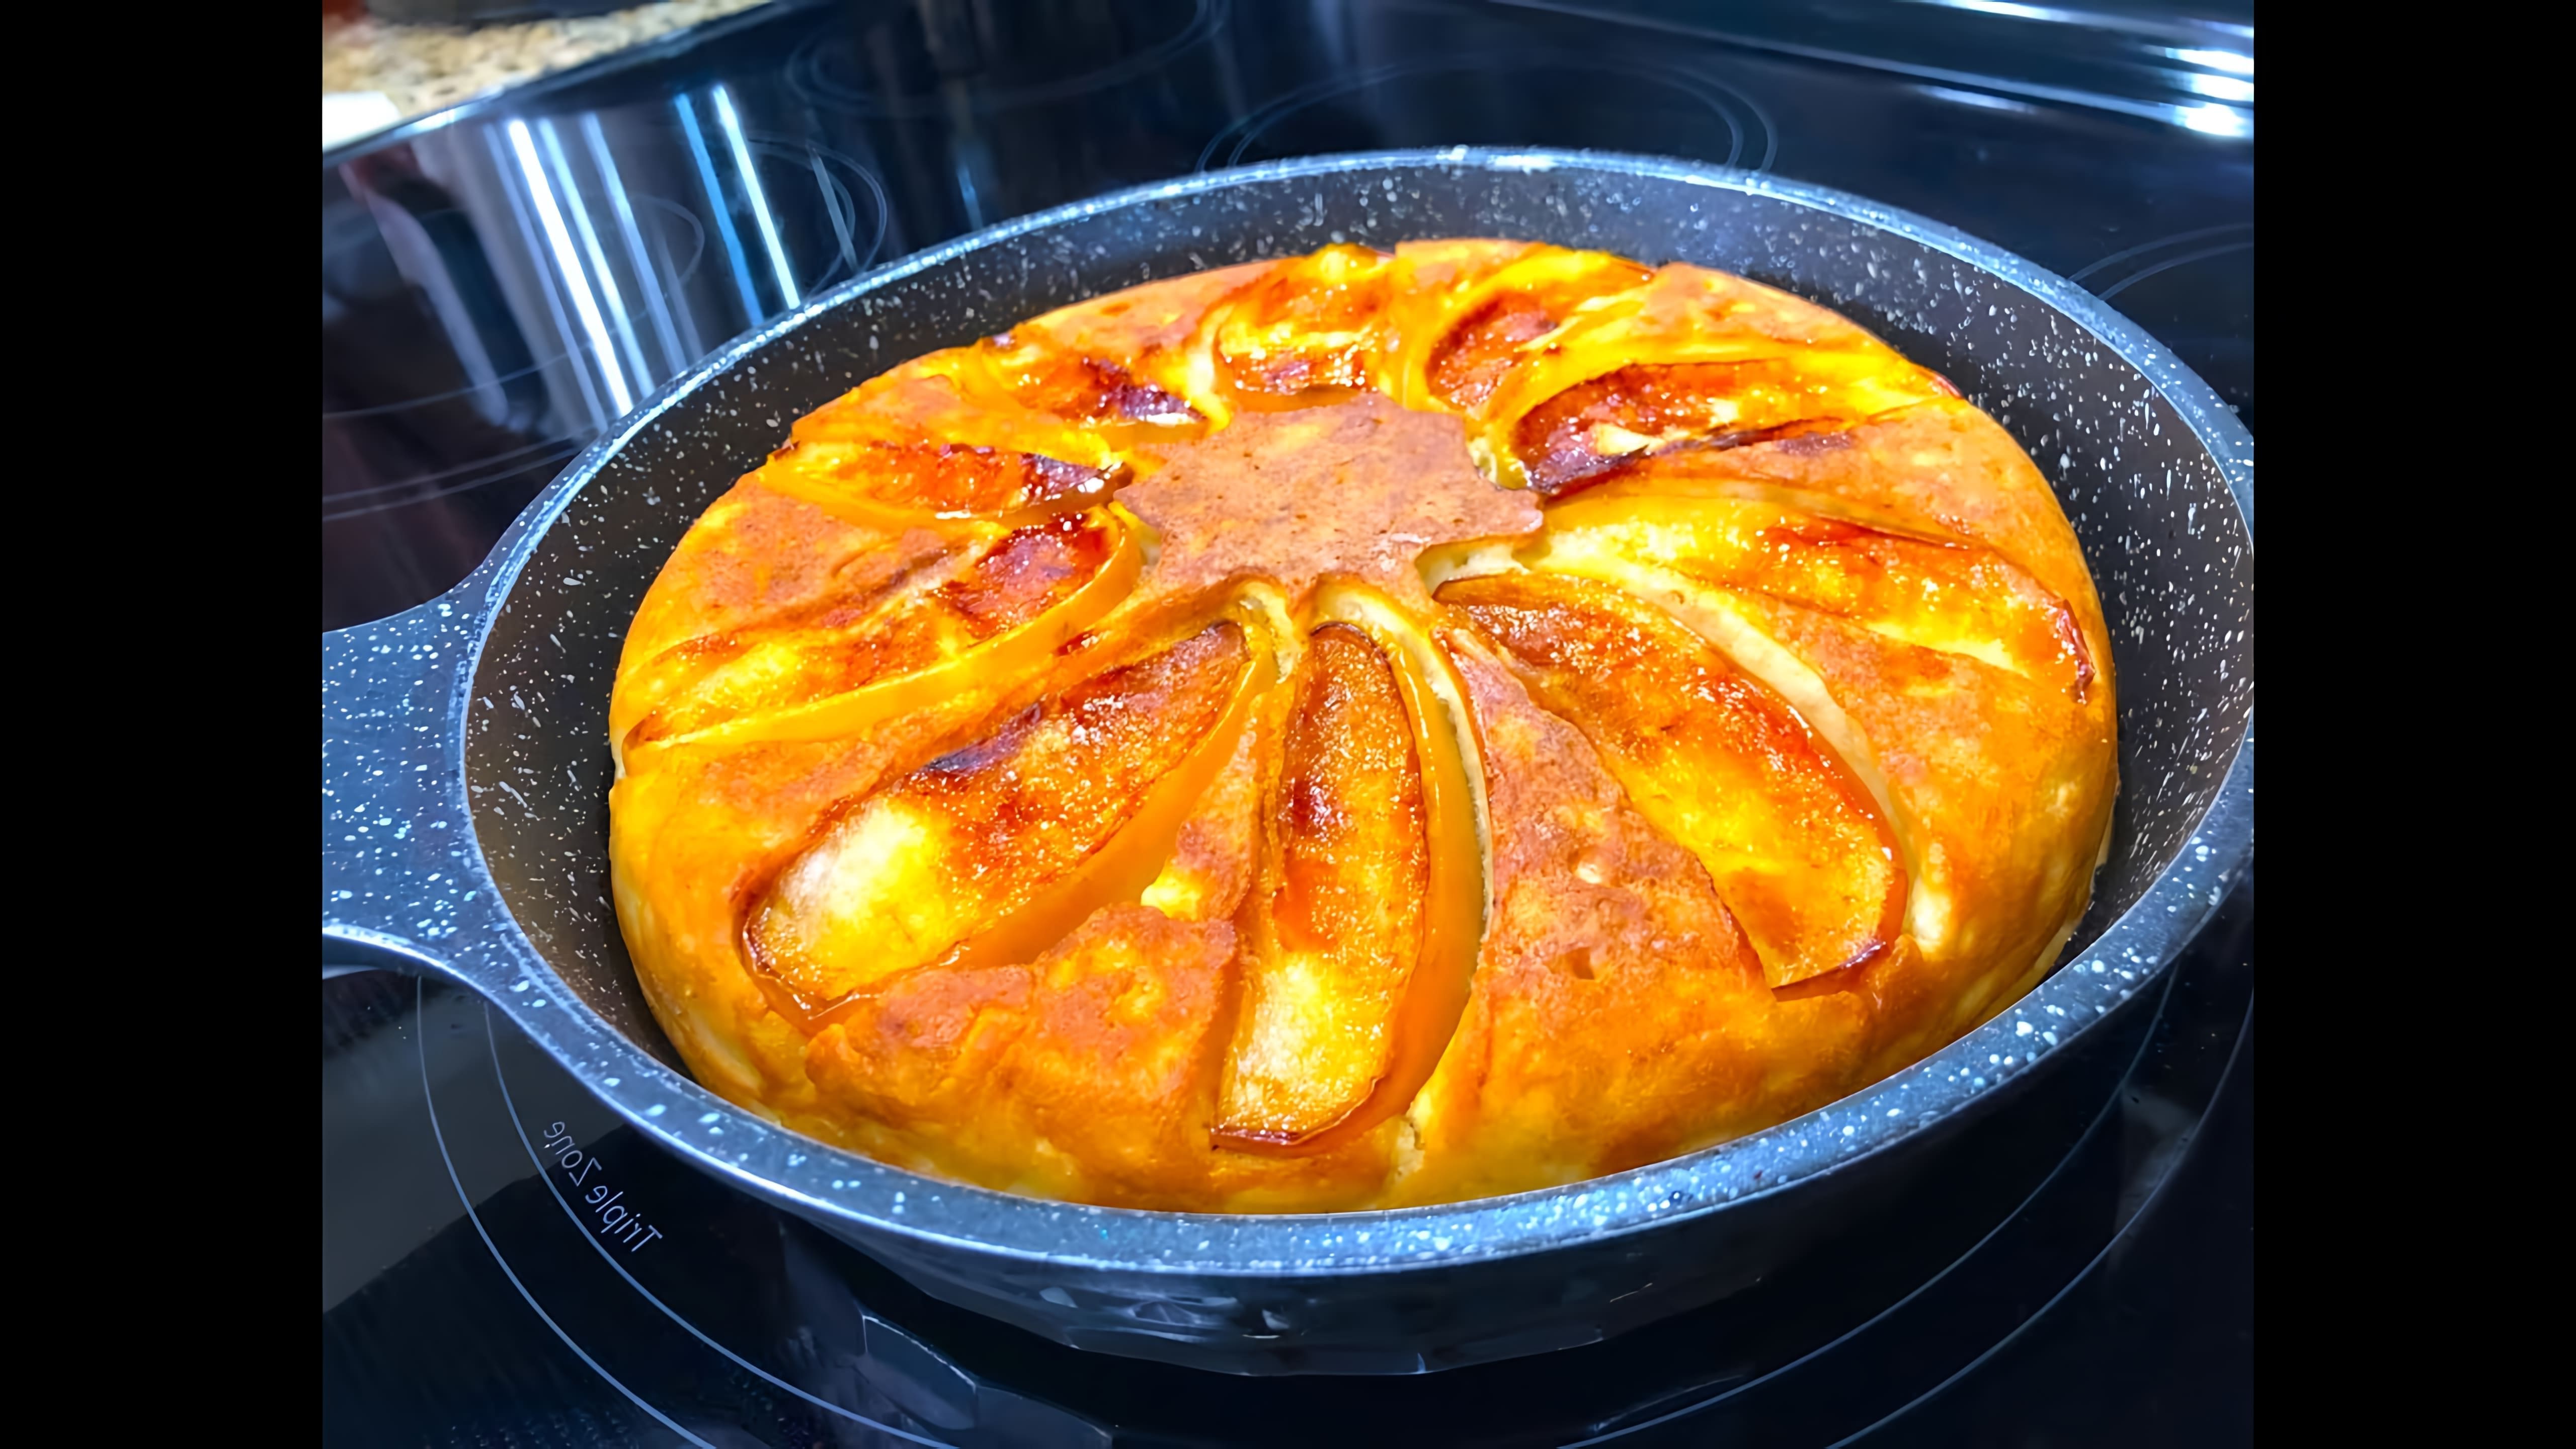 Видео рецепт быстрого яблочного пирога, который можно приготовить в сковороде, что делает его подходящим для приготовления на улице или когда кухонное оборудование ограничено